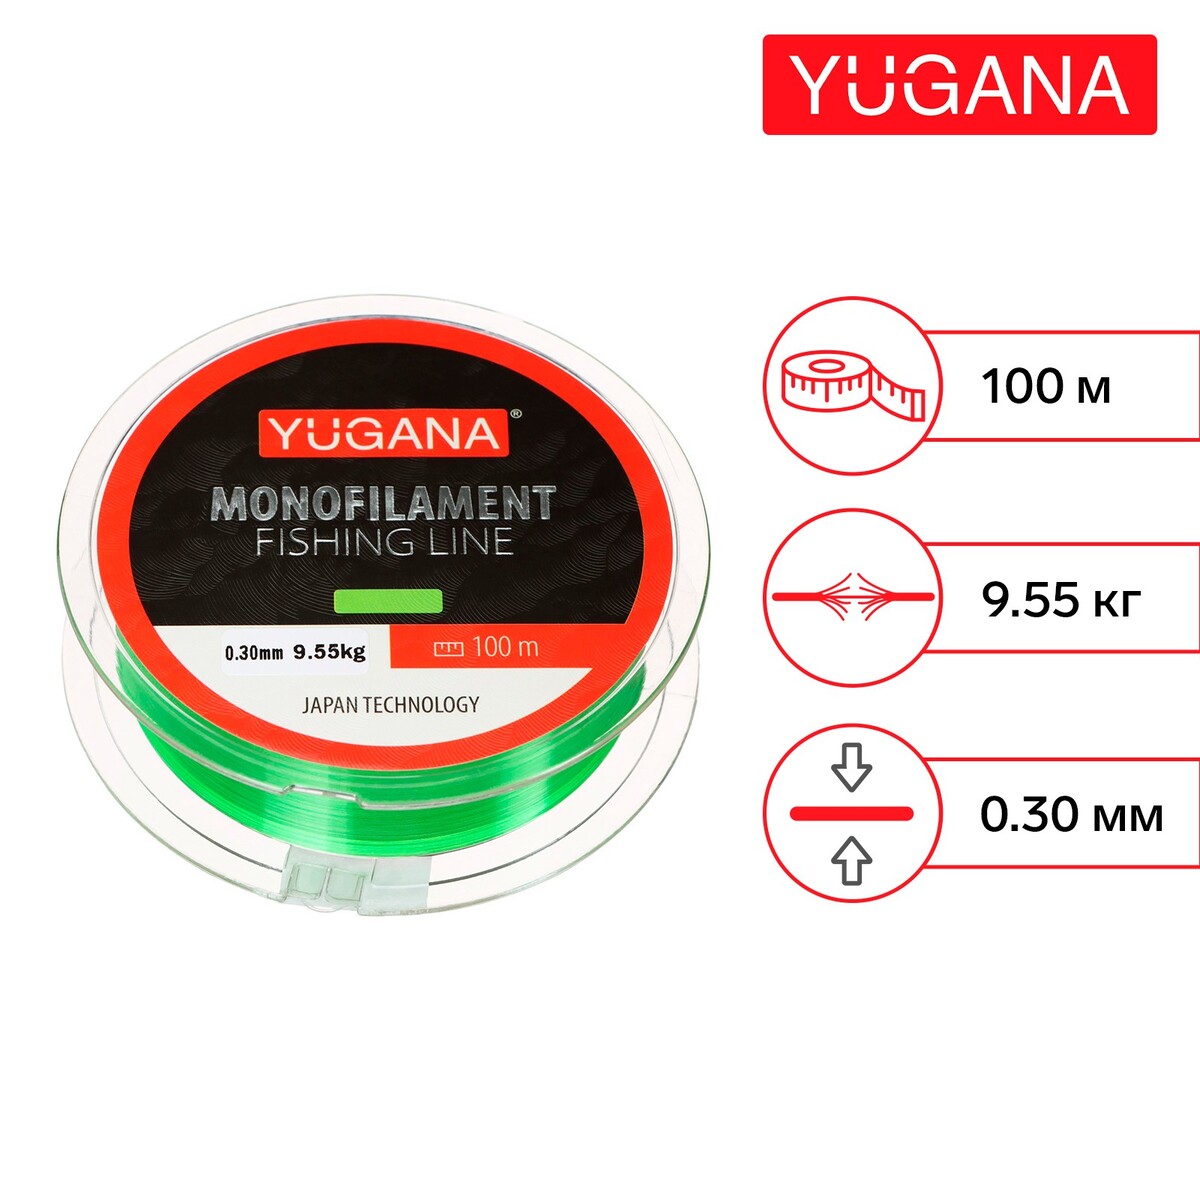 Леска монофильная yugana, диаметр 0.3 мм, тест 9.55 кг, 100 м, зеленая леска монофильная yugana диаметр 0 3 мм тест 9 55 кг 100 м зеленая